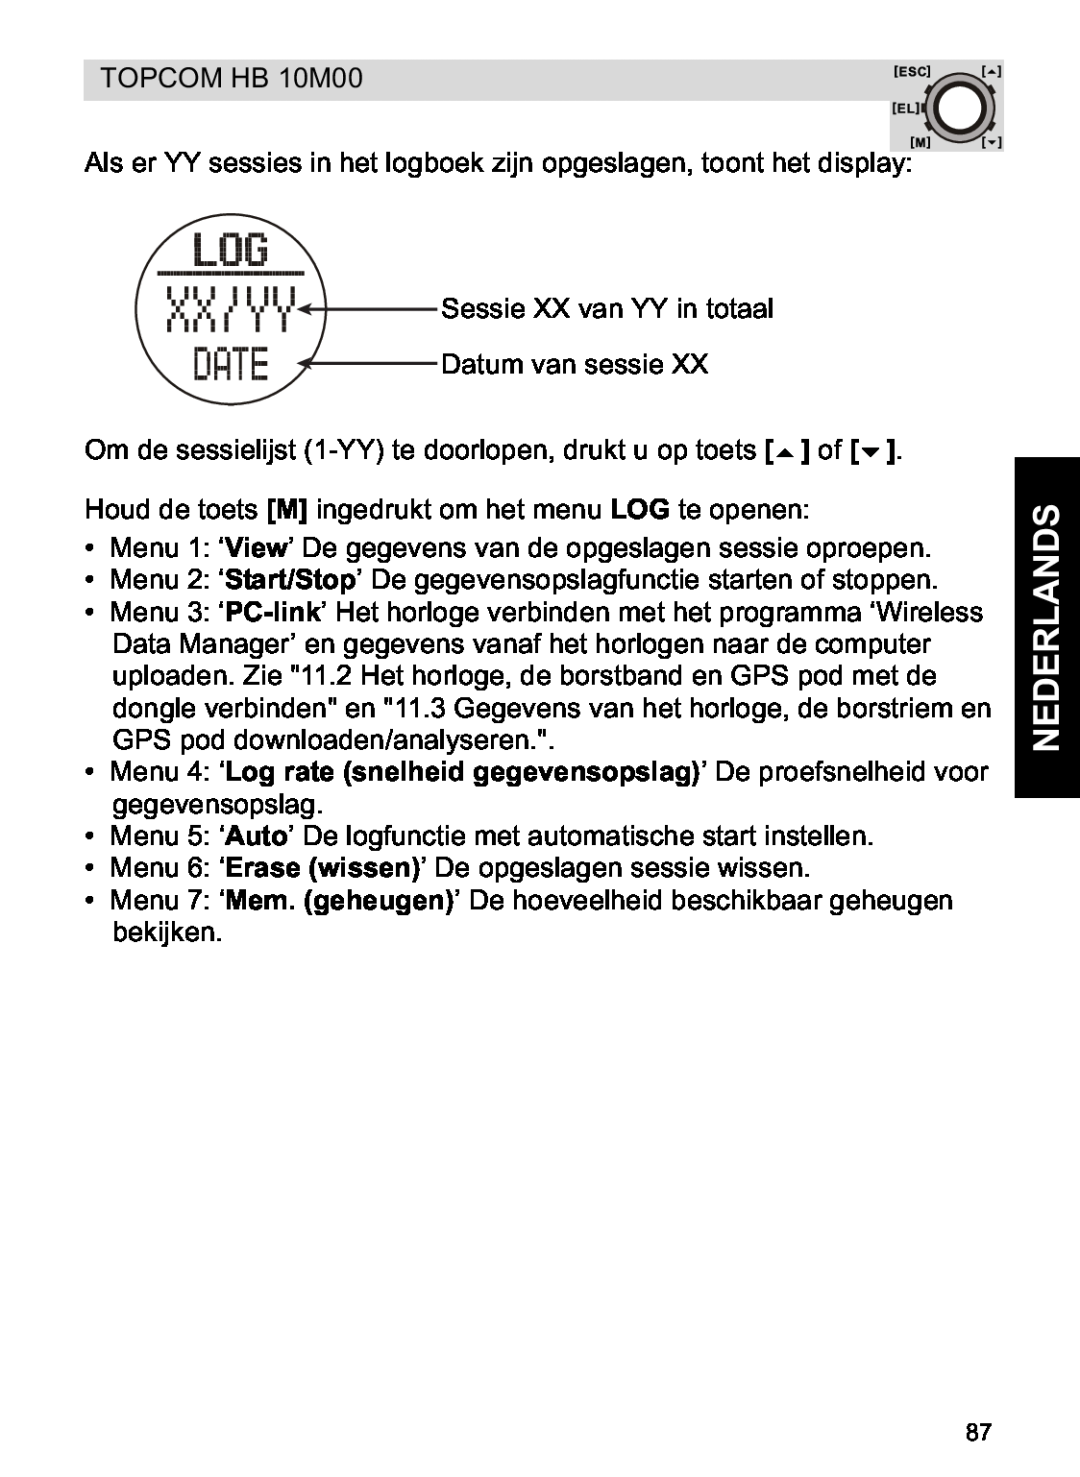 Topcom HB 10M00 manual Nederlands 